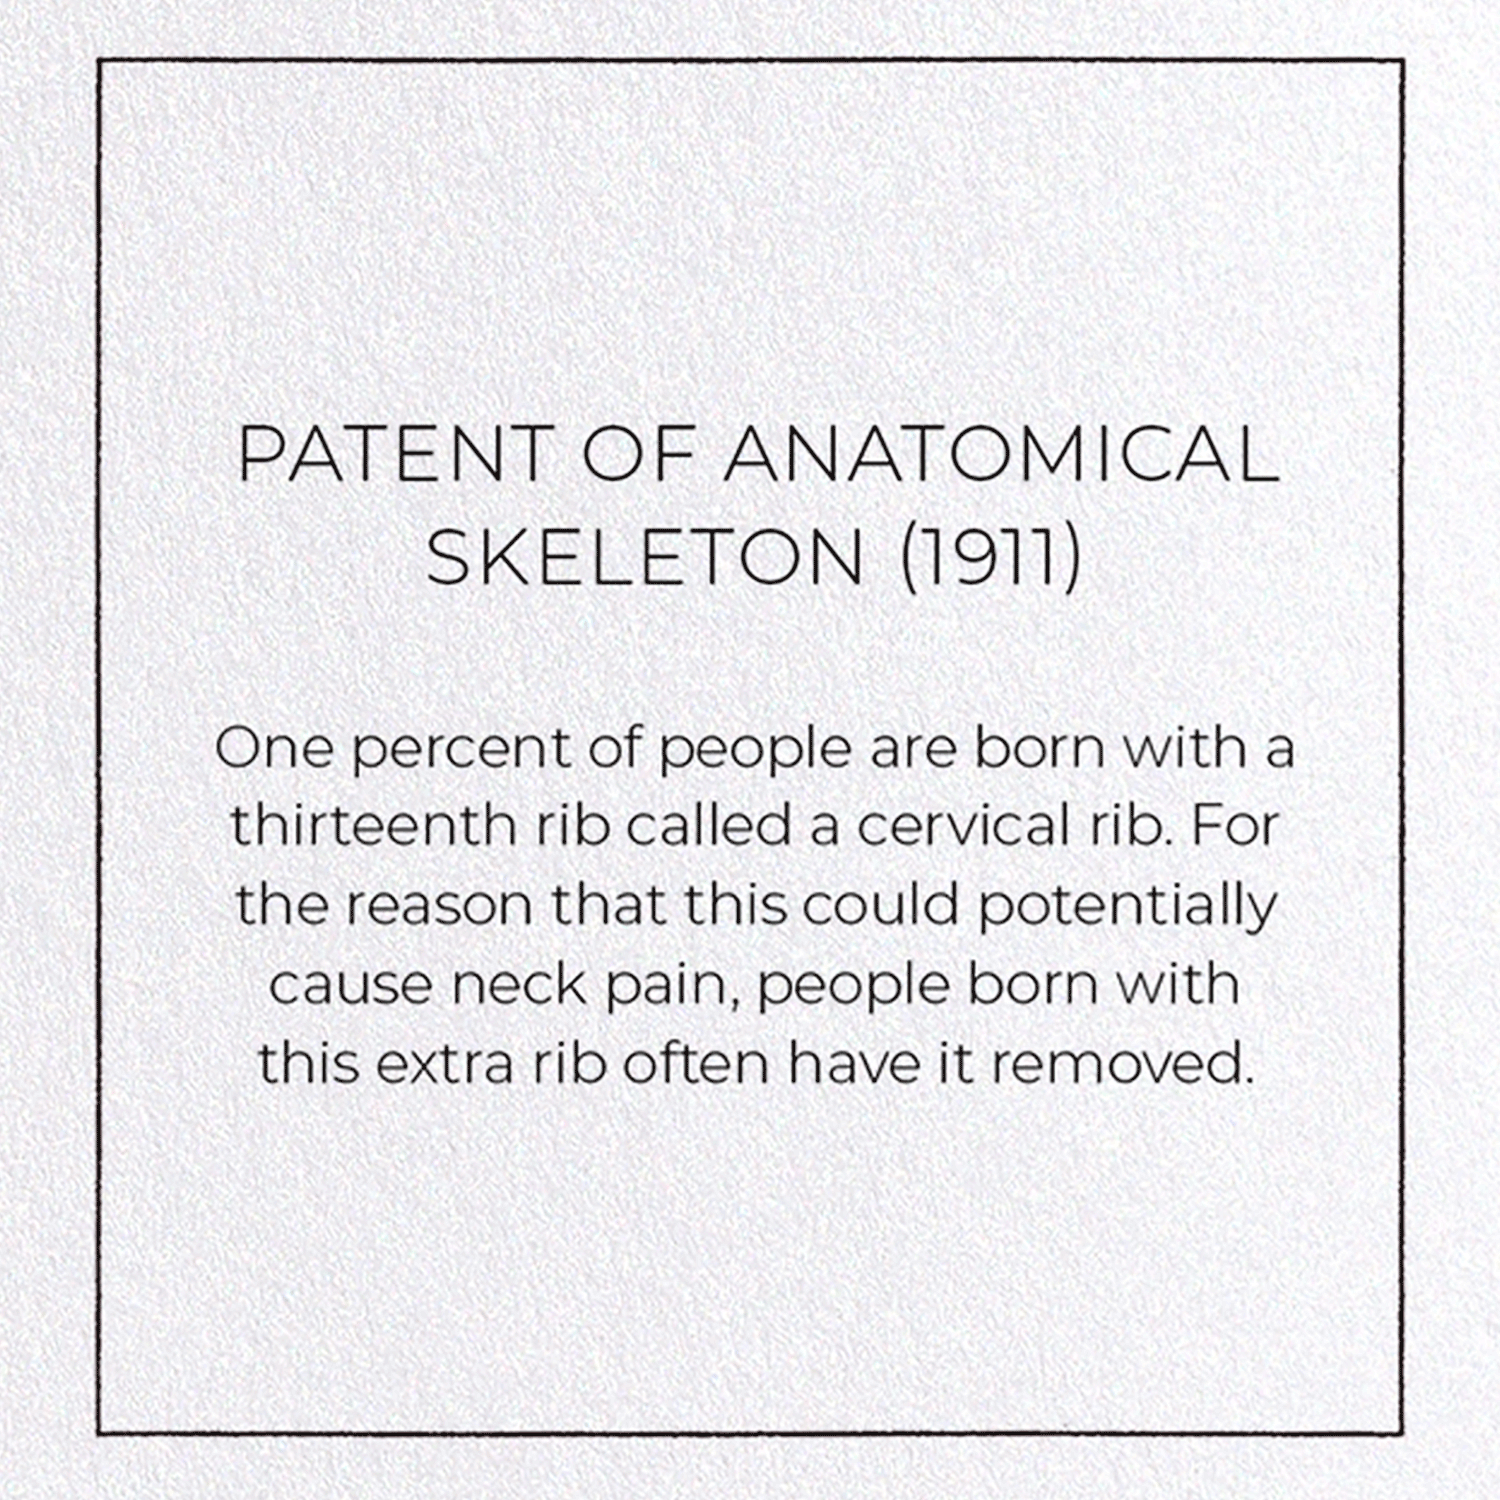 PATENT OF ANATOMICAL SKELETON (1911)